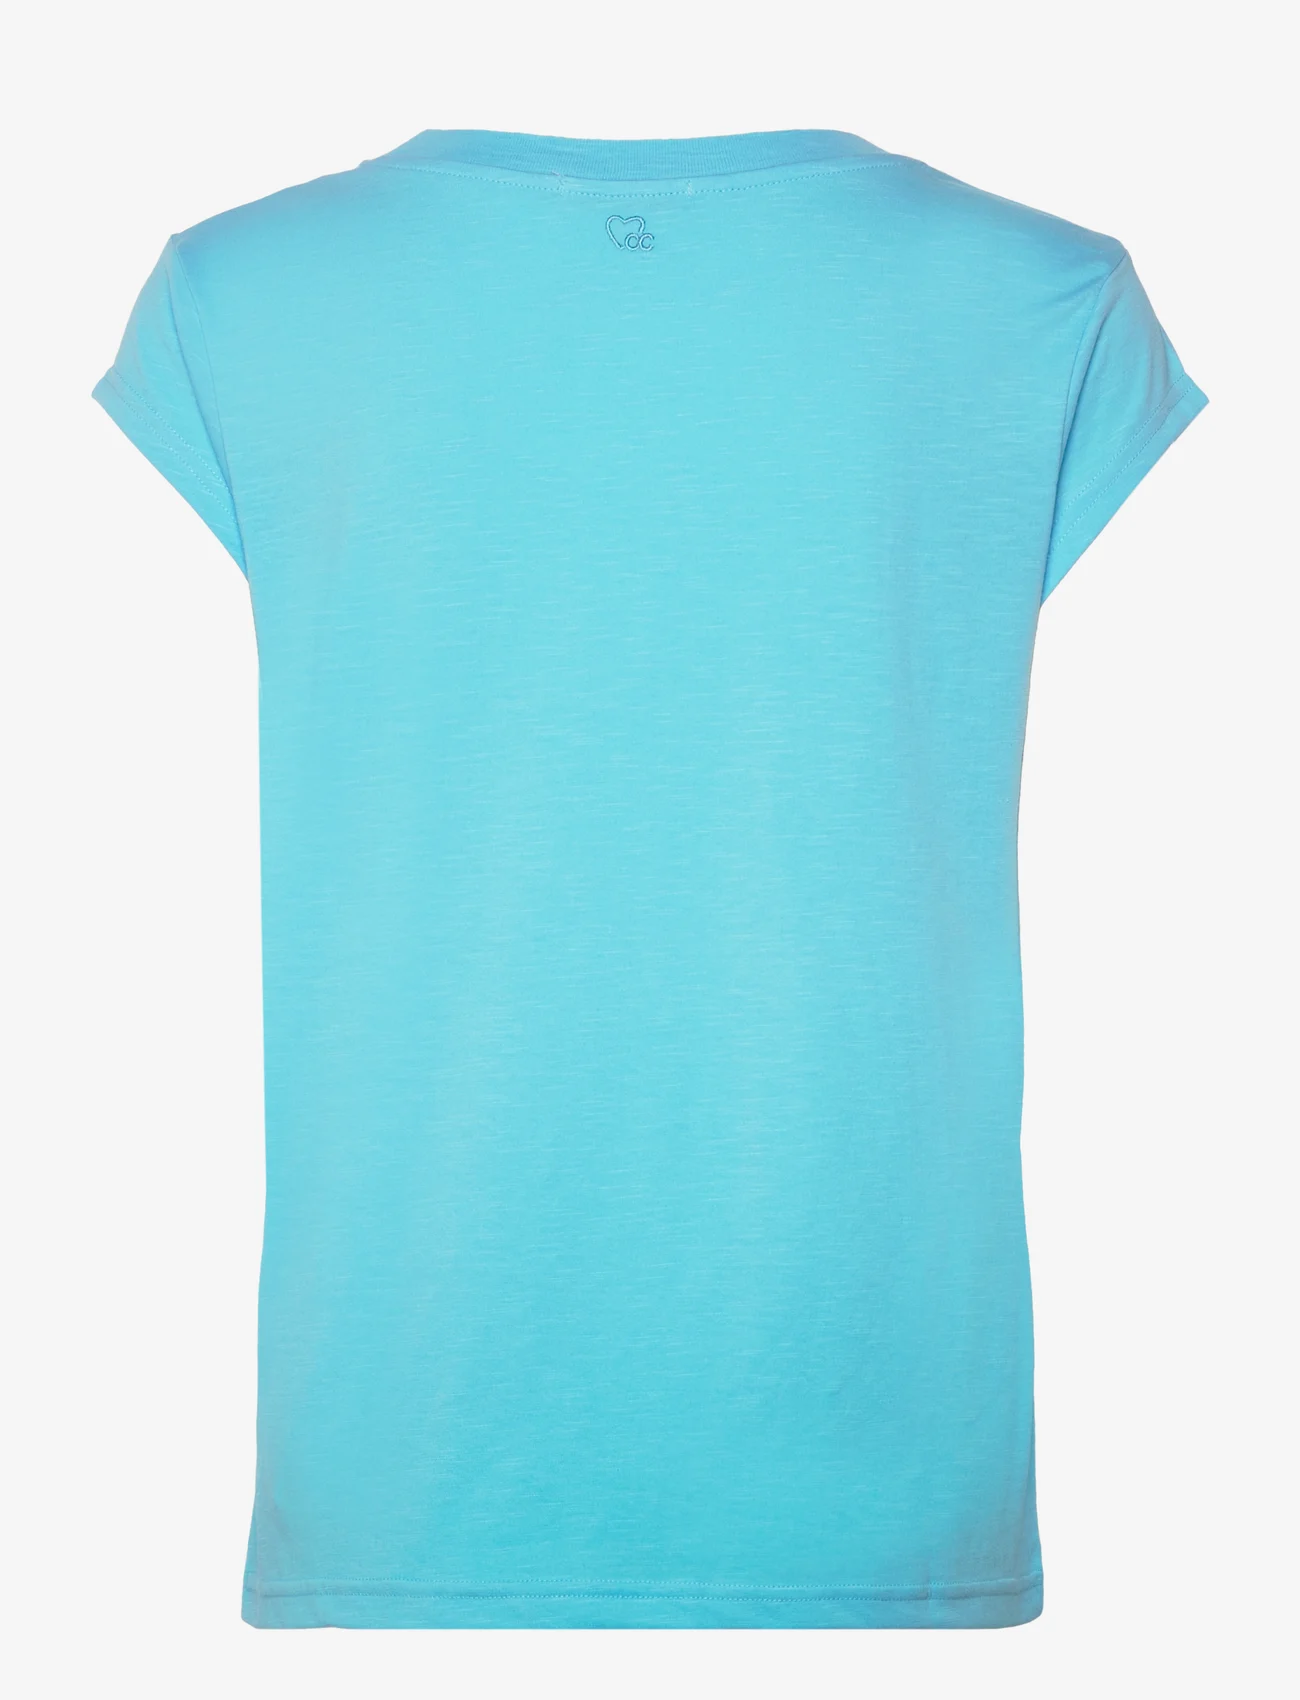 Coster Copenhagen - CC Heart basic t-shirt - lägsta priserna - light coastal blue - 1